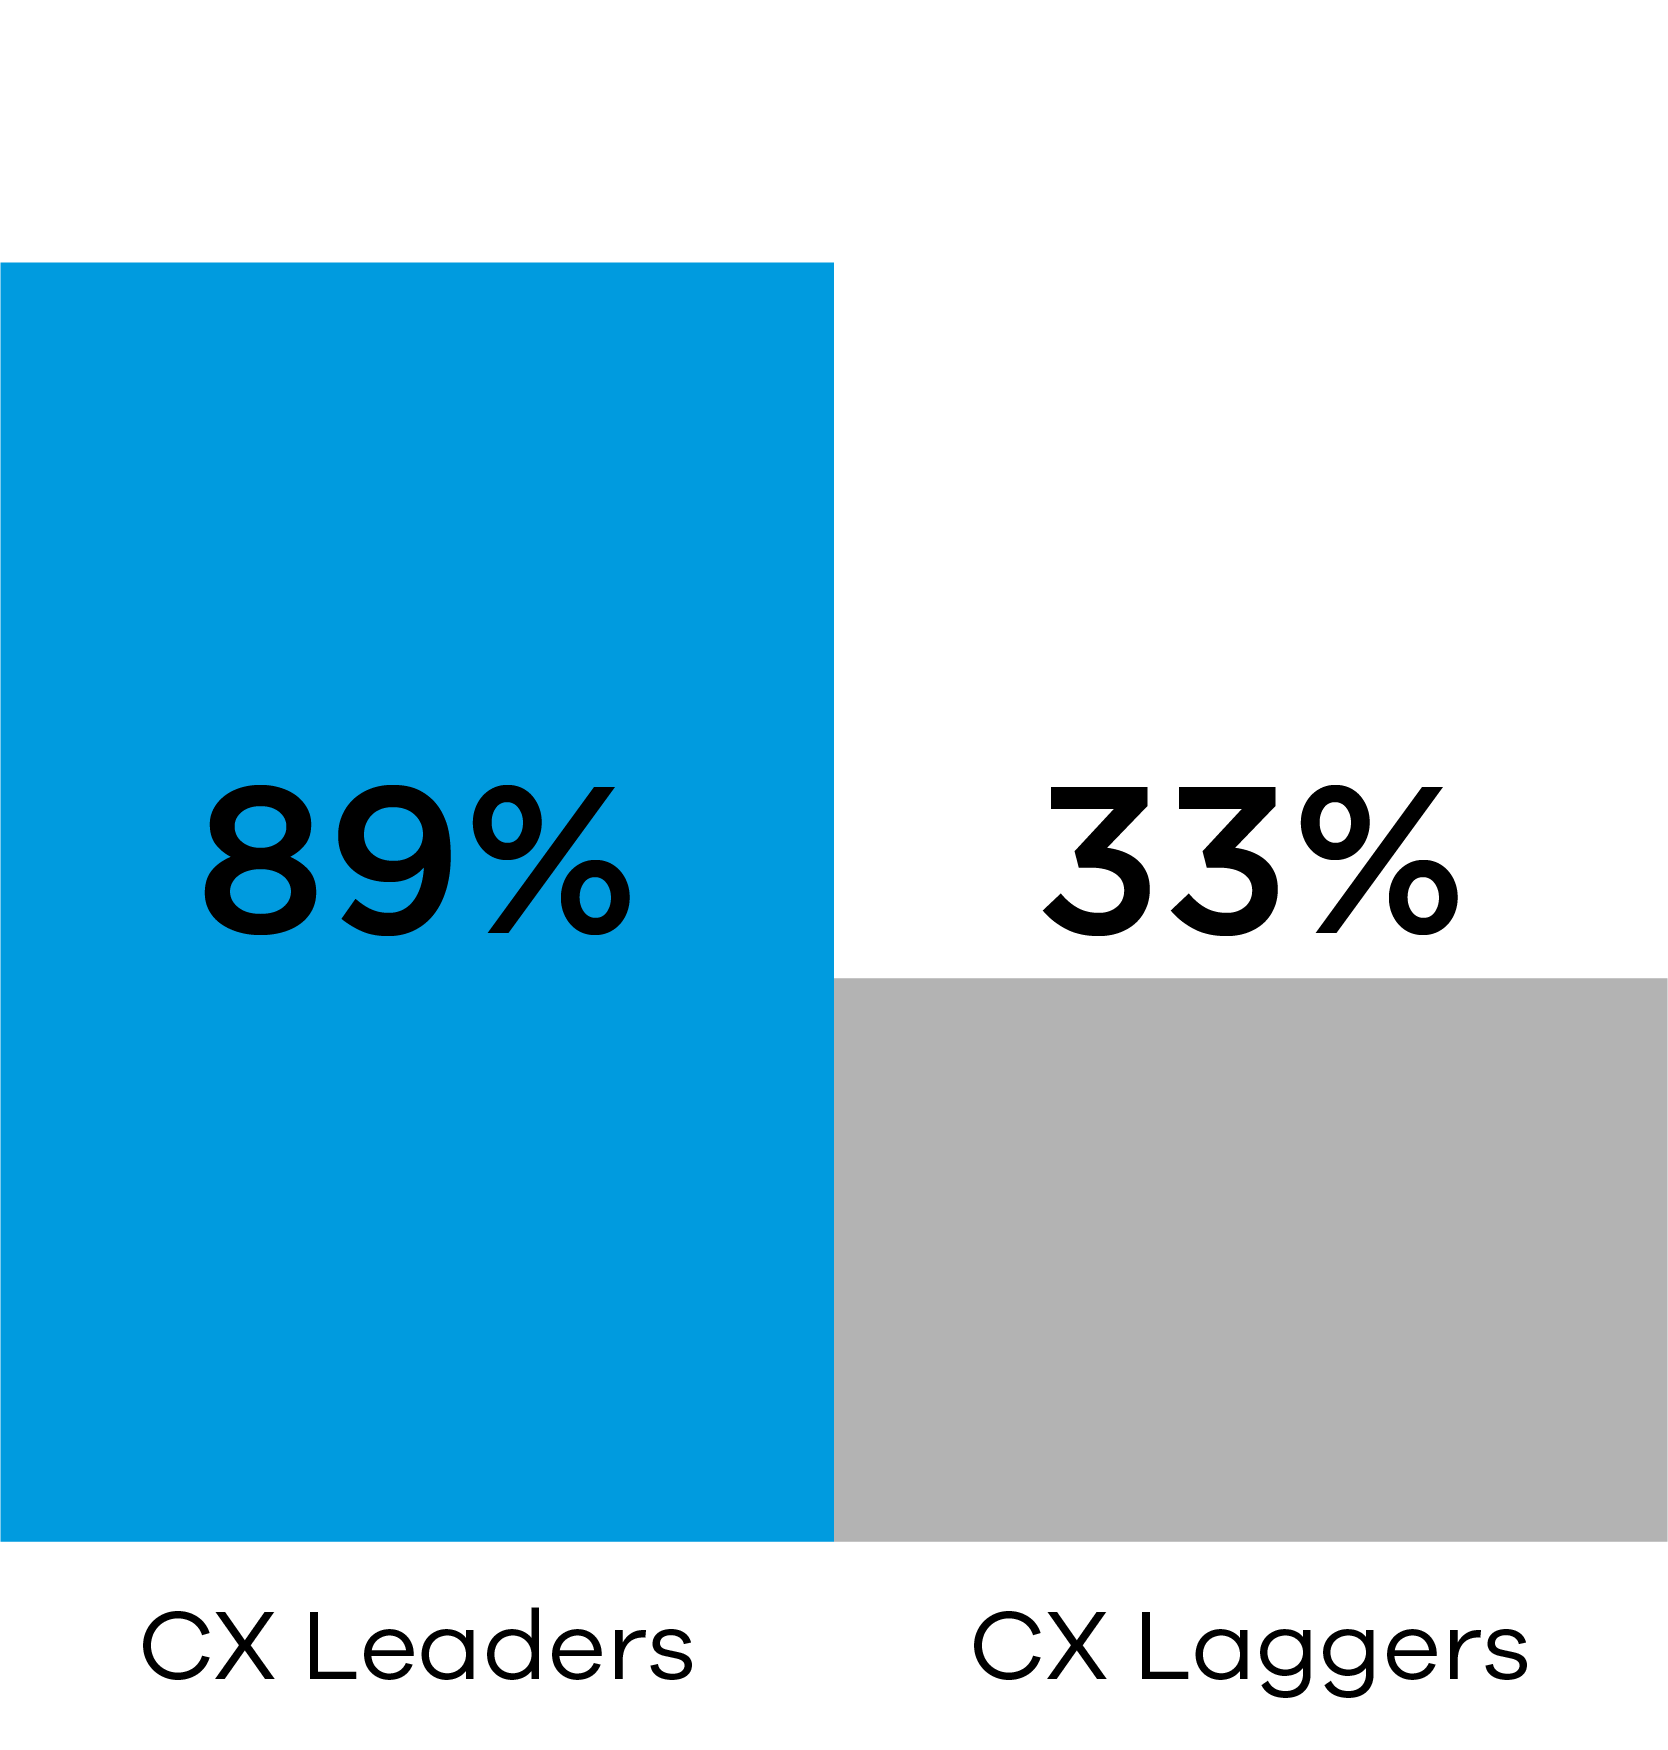 CX Leaders 89% vs CX Laggers 33%